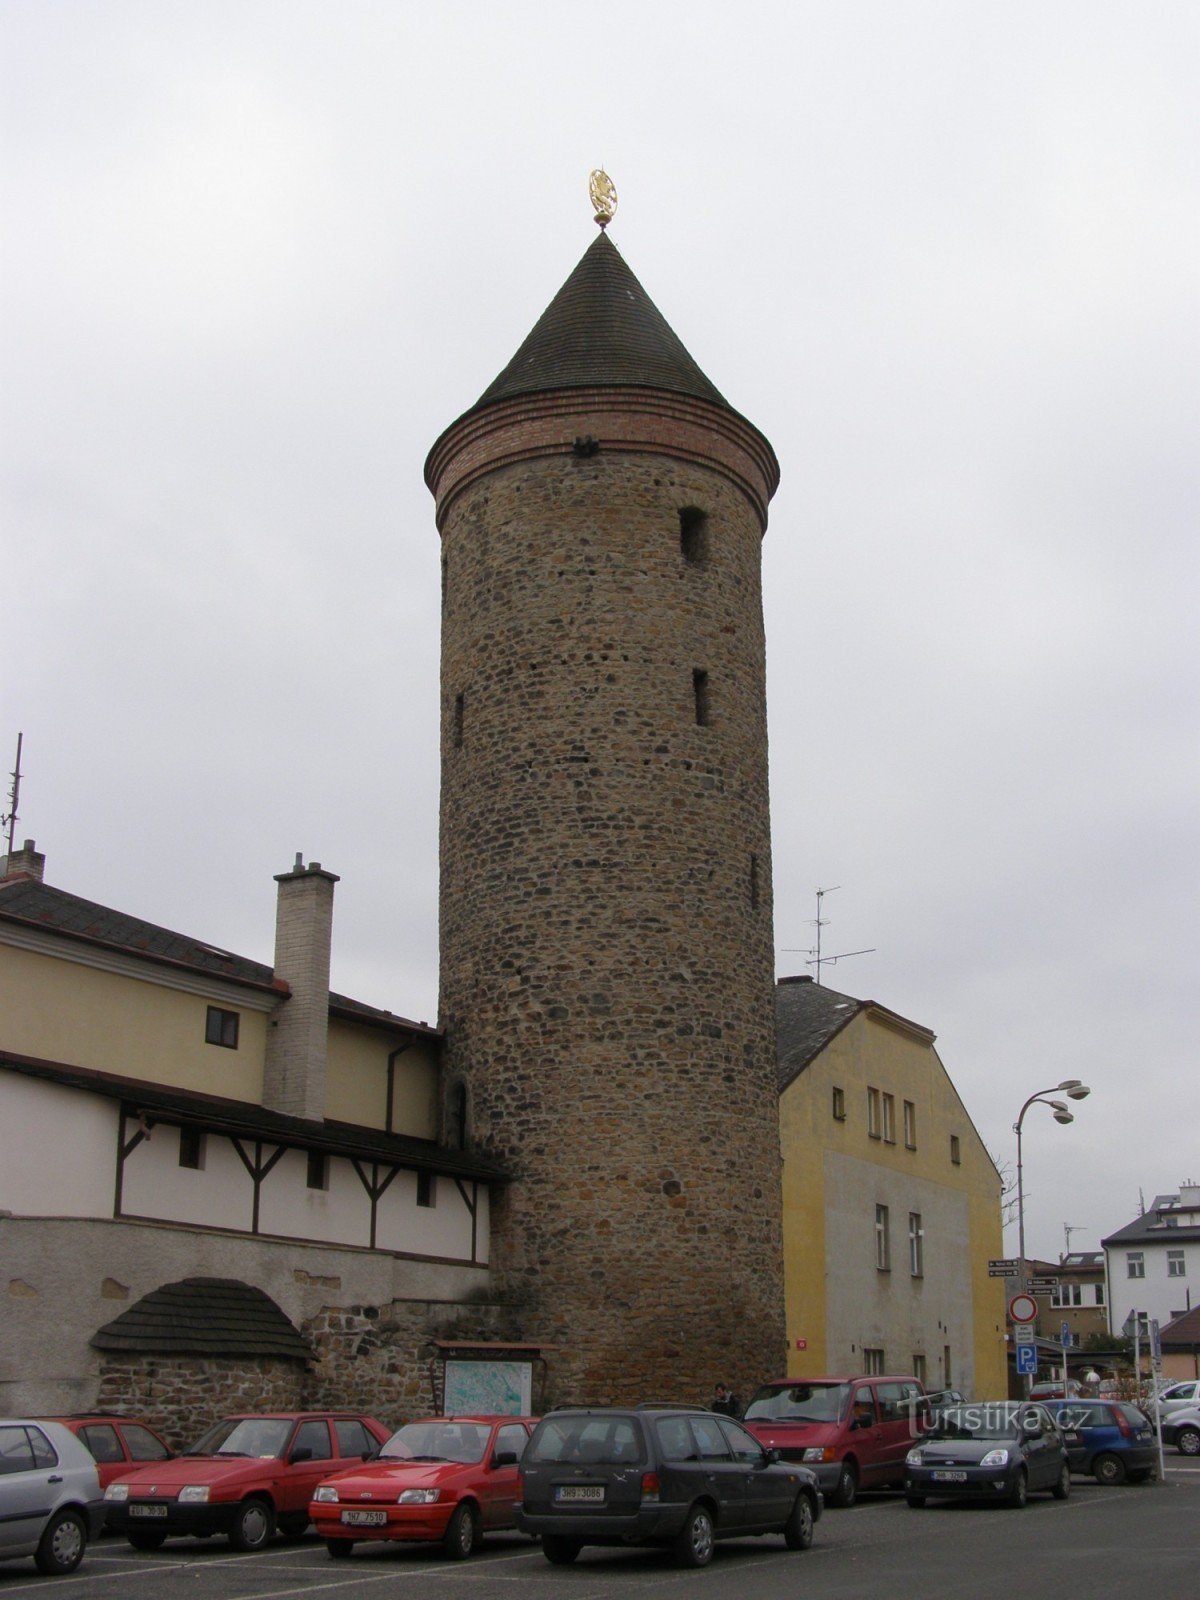 Dvur Králové - Shindelářská tower